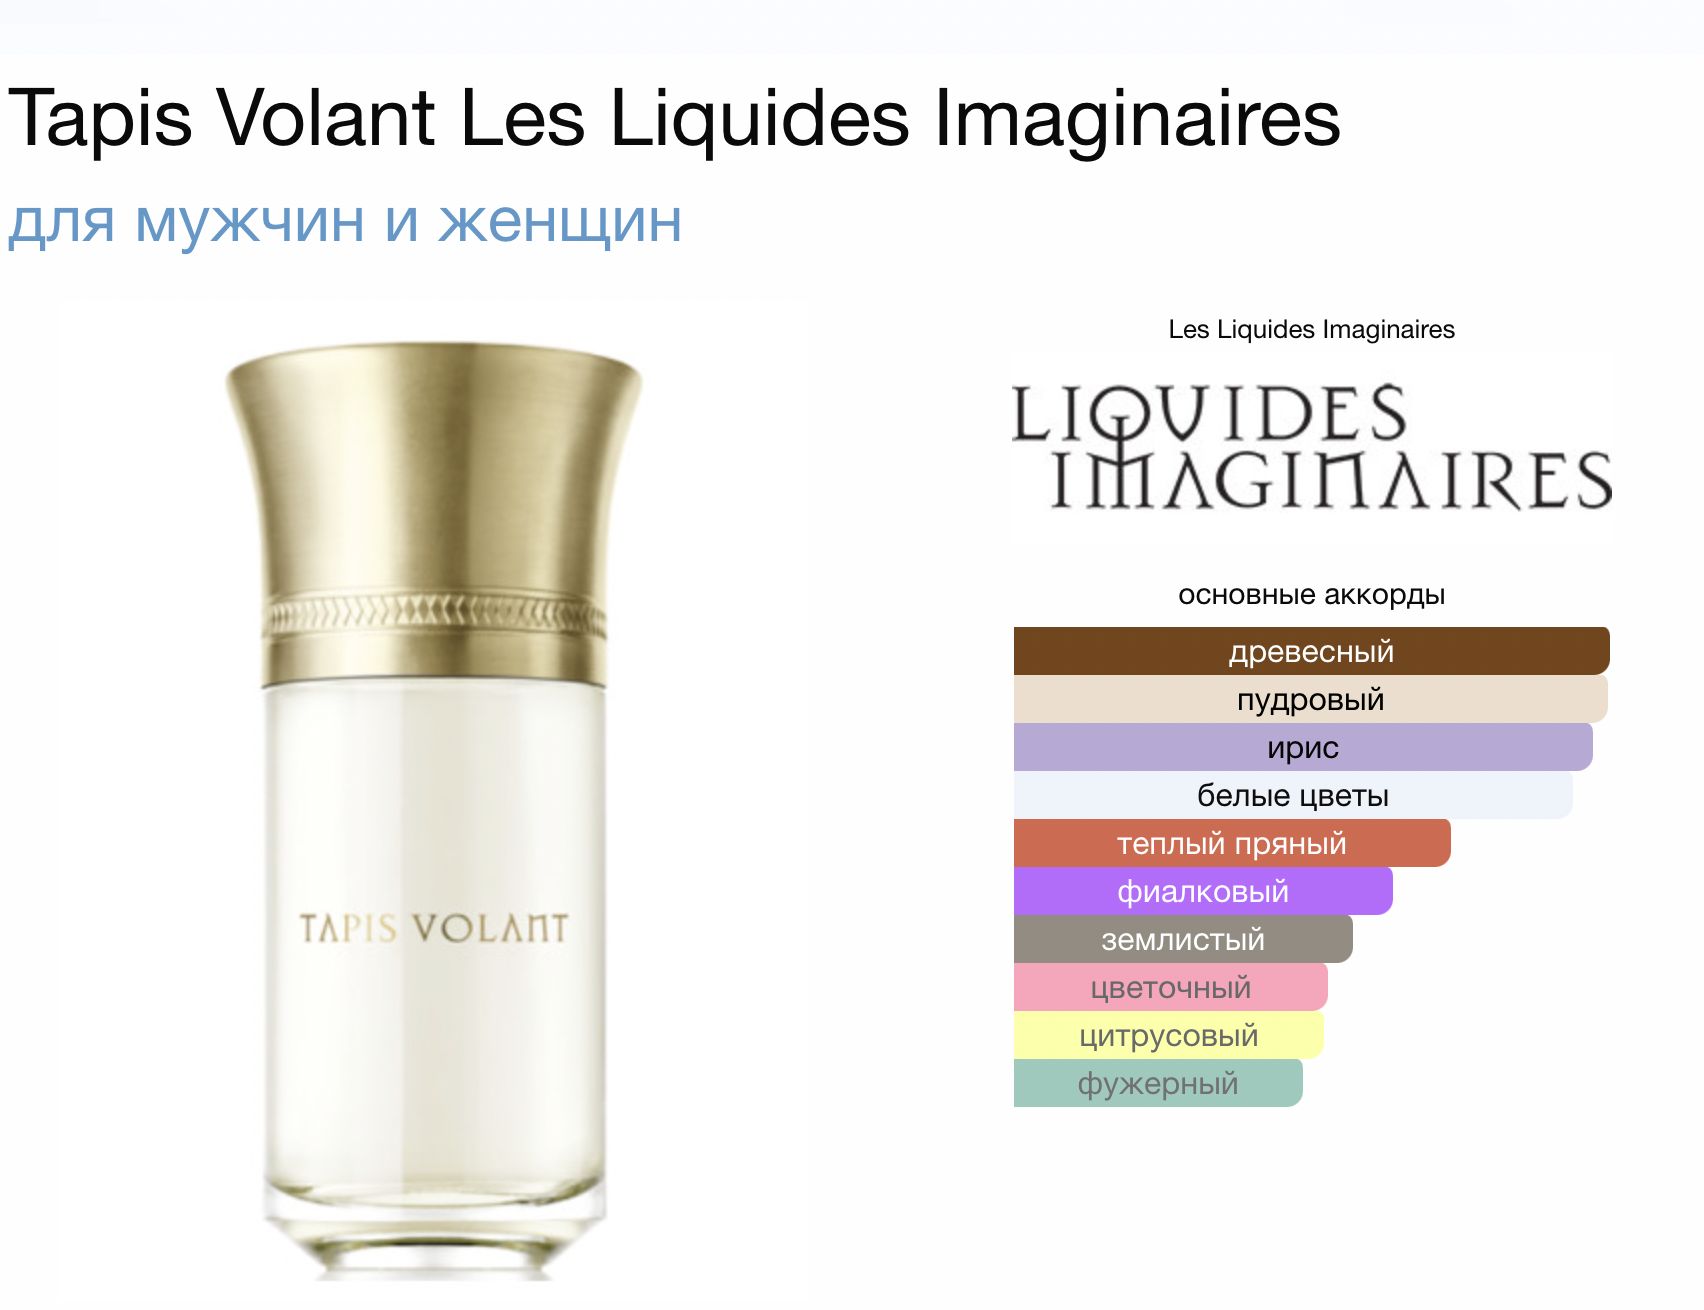 Liquides imaginaires fleur de. Liquides imaginaires парфюмерная вода. Les liquides imaginaires коробка. Тапис Волант Парфюм. Liquides imaginaires отзывы.